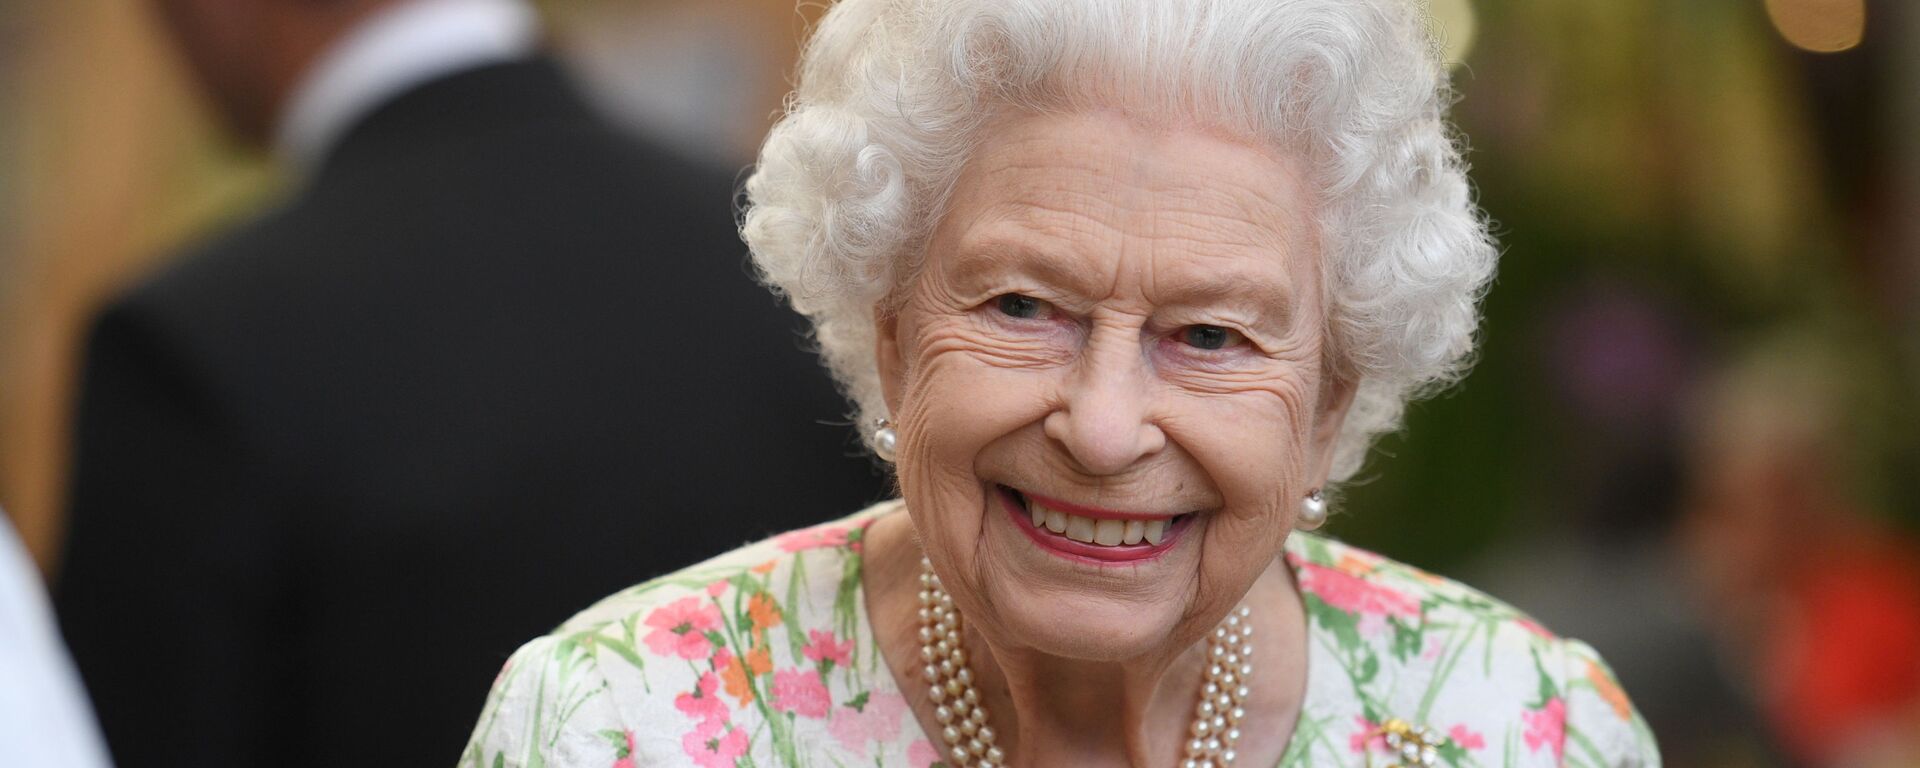 ملكة بريطانيا، إليزابيث الثانية، تحضر حفل استقبال على هامش قمة مجموعة السبع، في كورنوال، بريطانيا، 11 يونيو/ حزيران 2021 - سبوتنيك عربي, 1920, 29.10.2021